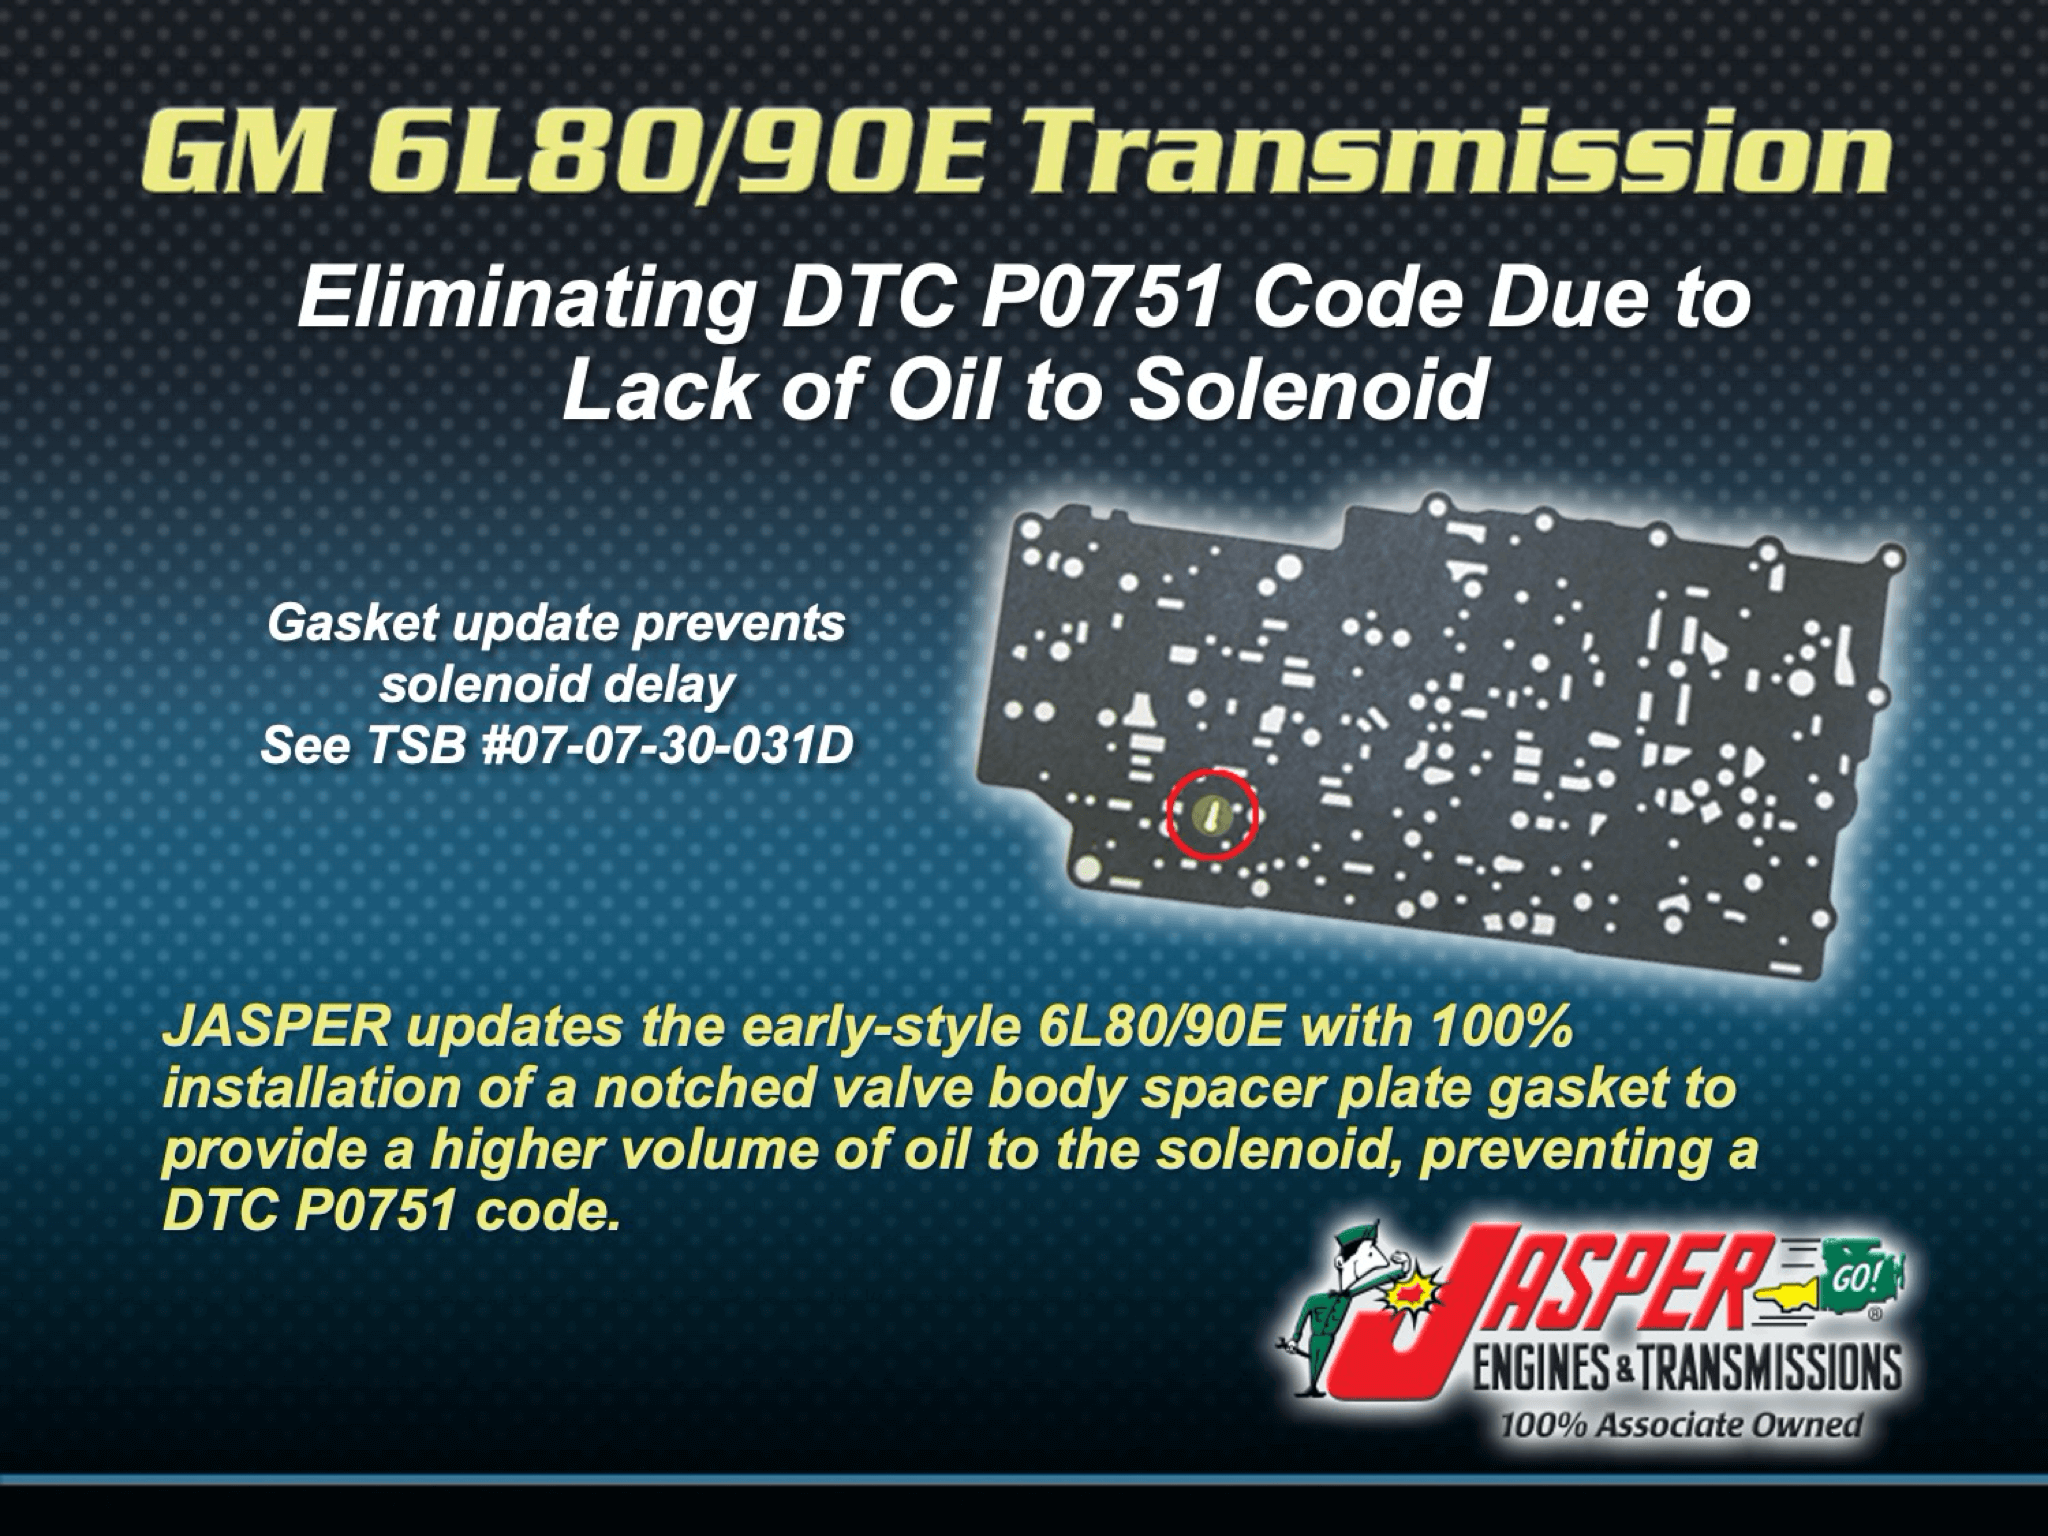 GM 6L80/90E Transmissions